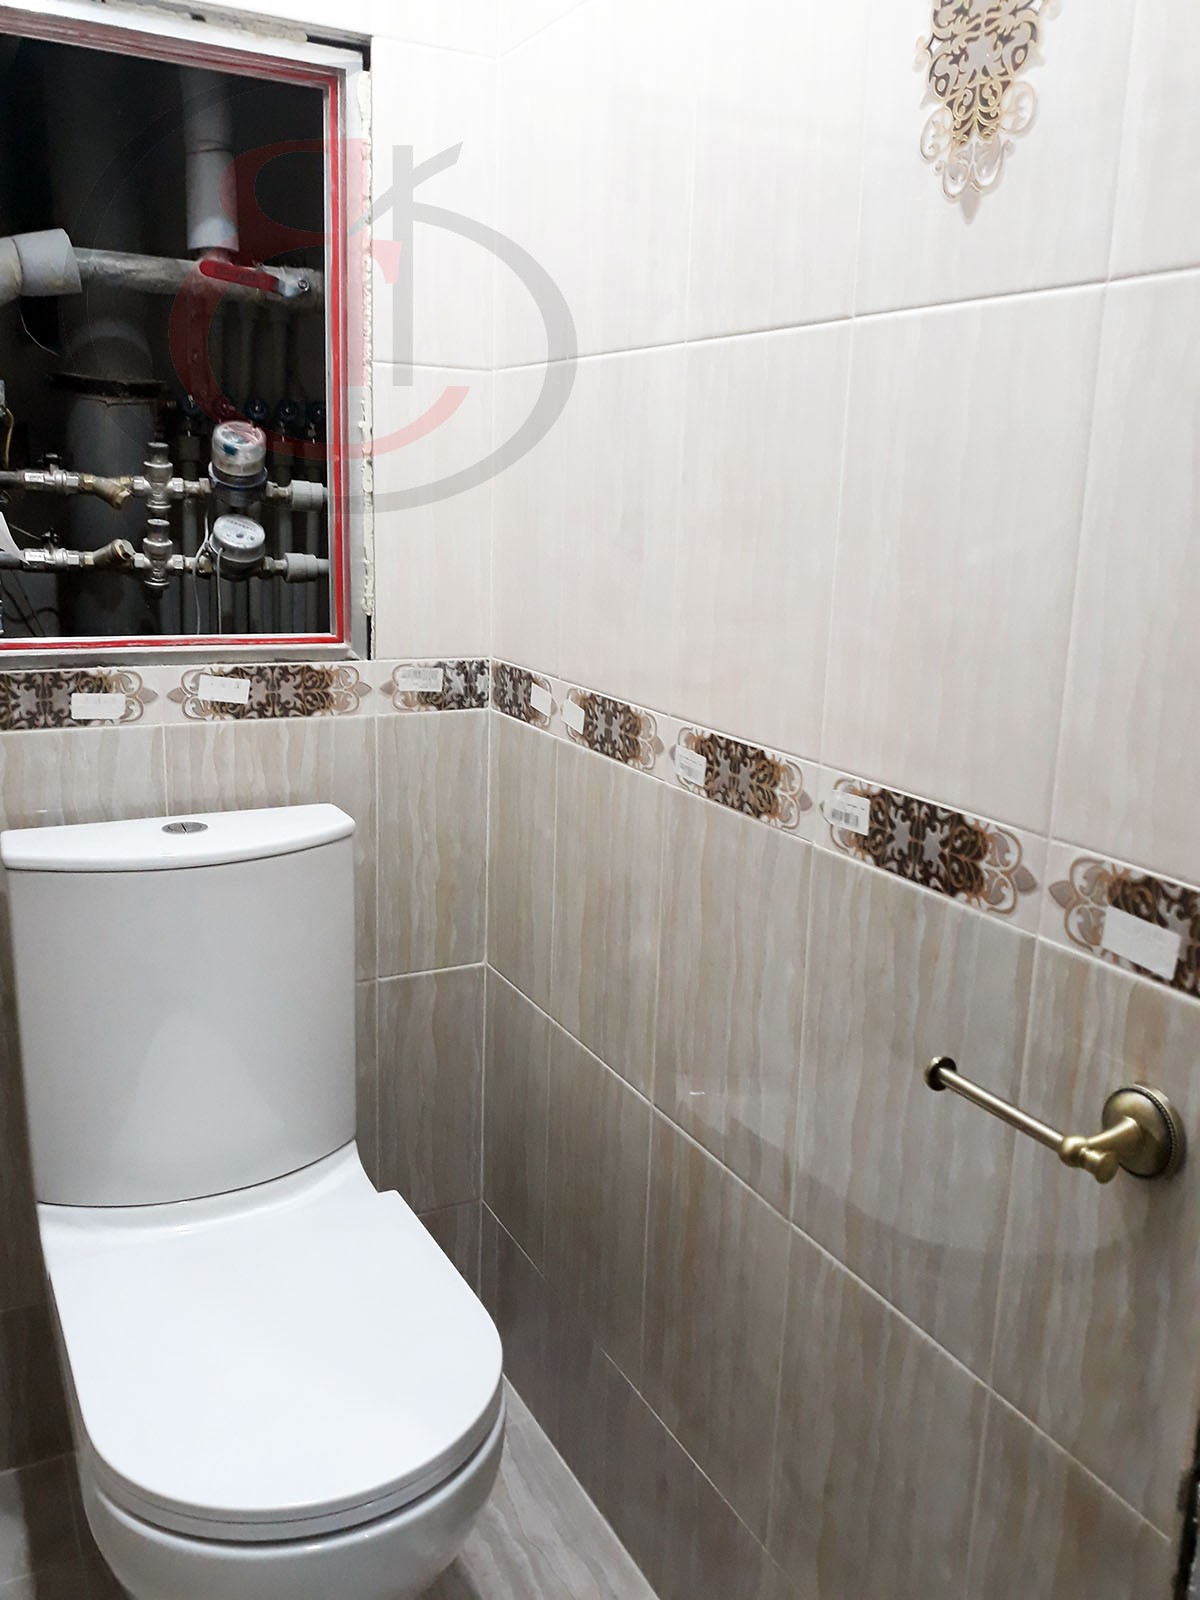 Достоинства качества в отделке ванной и туалета по ул. Беловежская, ПОСЛЕ (10)